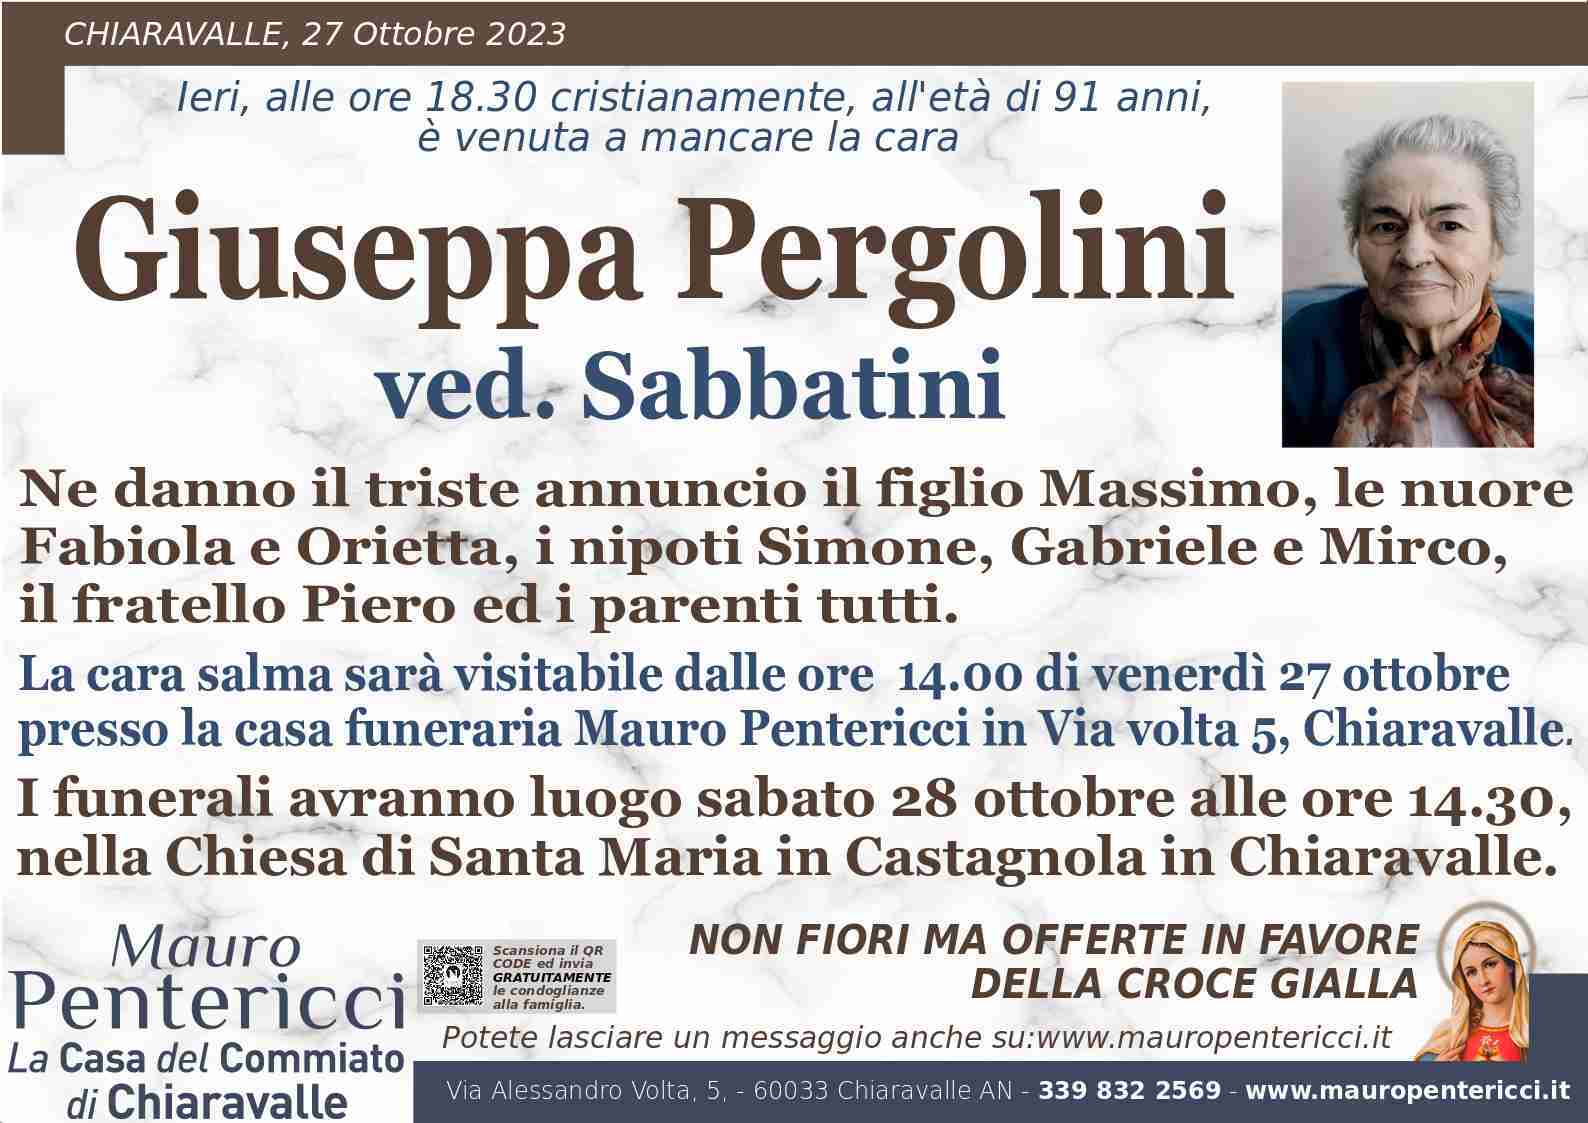 Giuseppa Pergolini